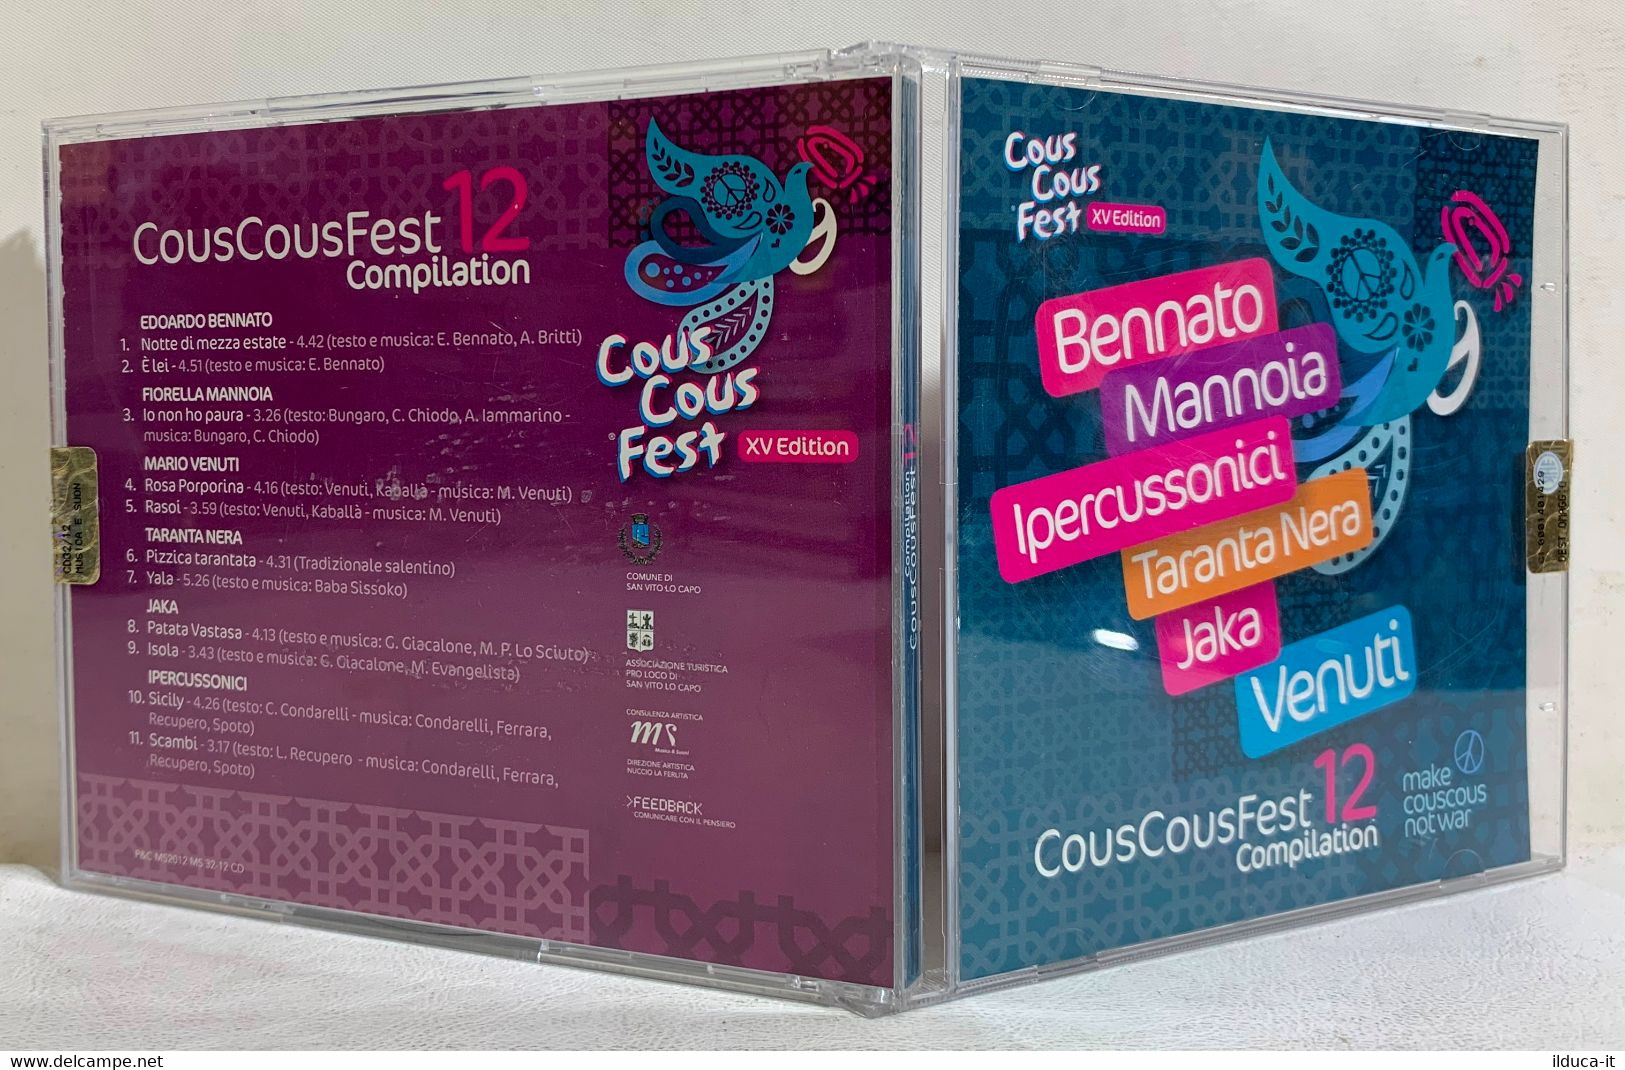 I103913 CD - Cous Cous Fest 12 Compilation (Bennato Mannoia Jaka Venuti) - Hit-Compilations